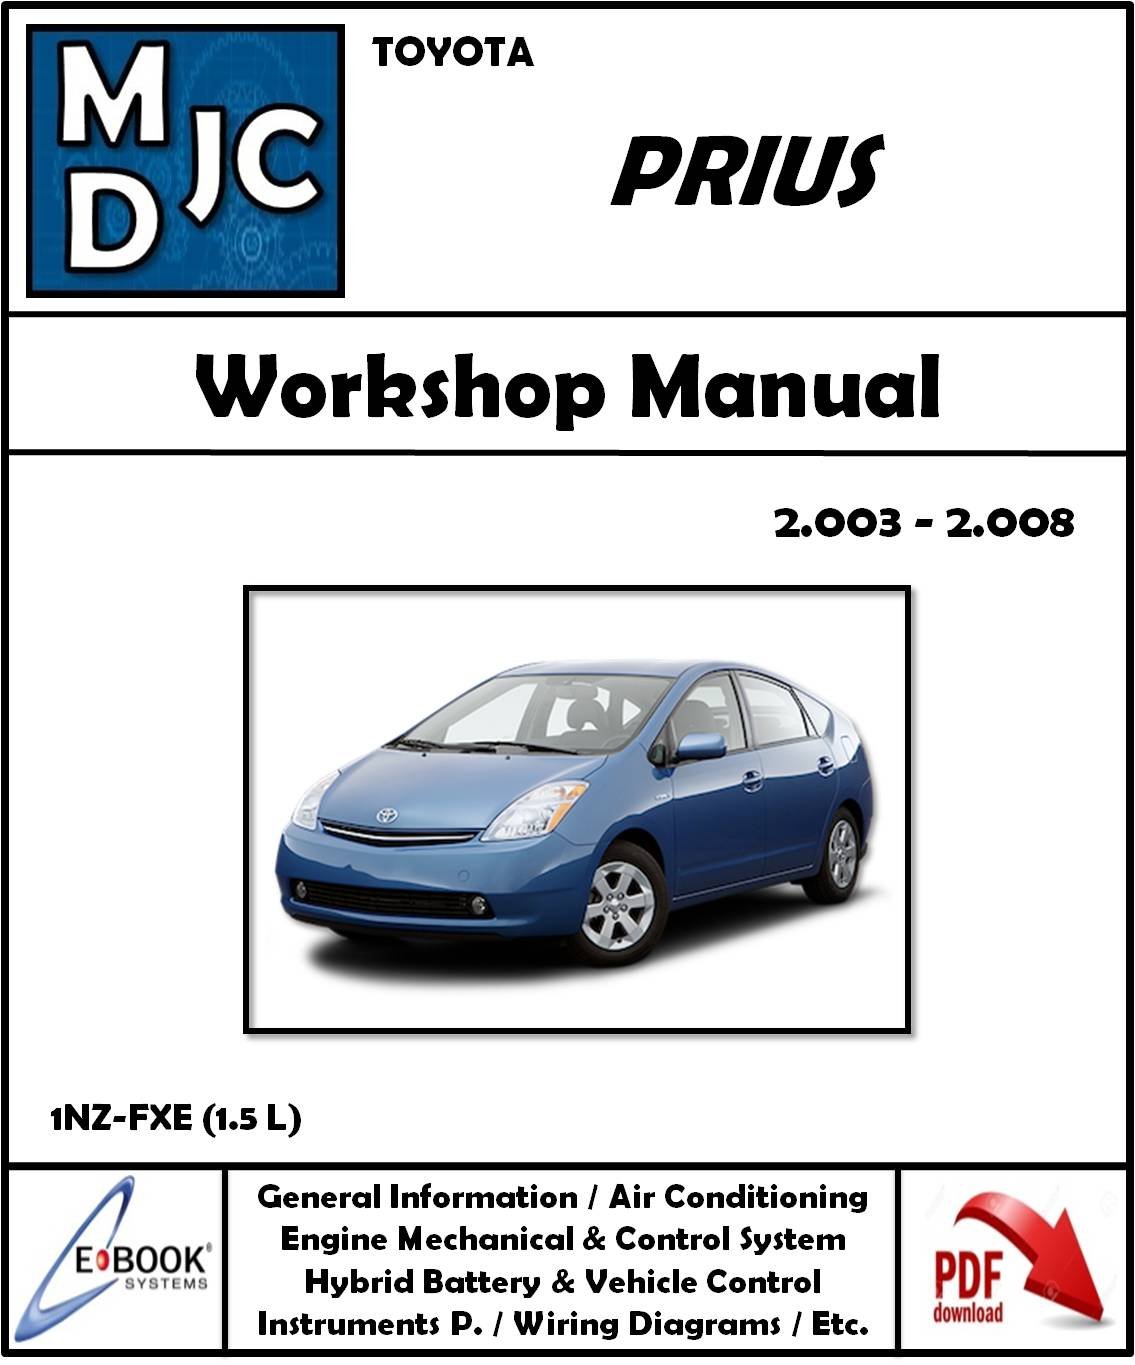 Manual de Taller + Diagramas del Sistema Electrico Toyota Prius 2003 - 2008